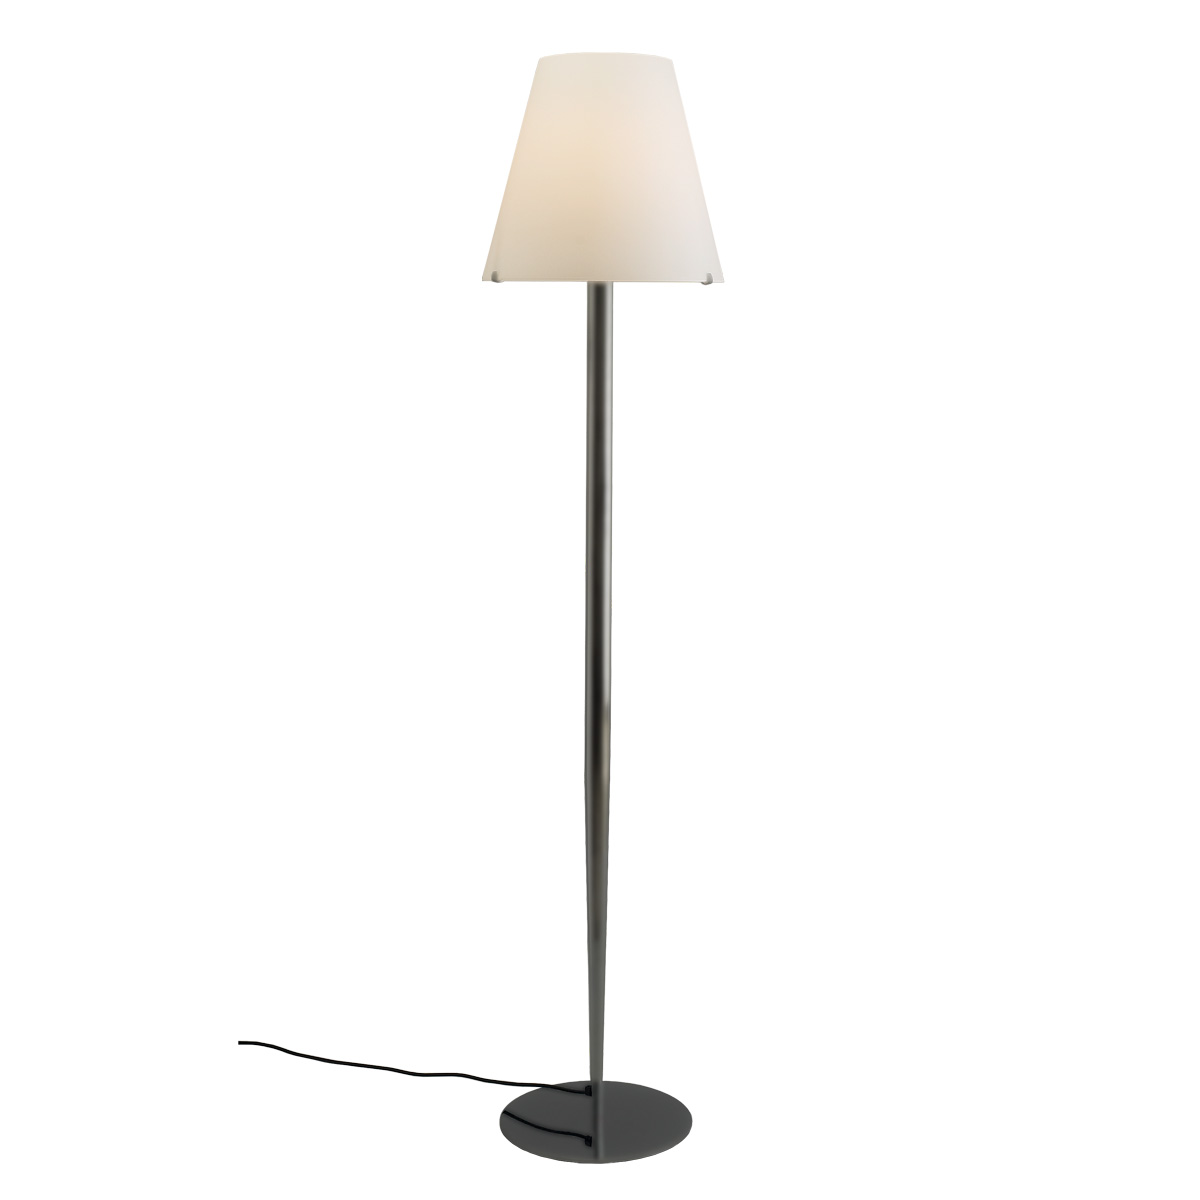 Μοντέρνο επιδαπέδιο φωτιστικό Μουράνο ΚΩΝΟΙ modern Murano floor lamp